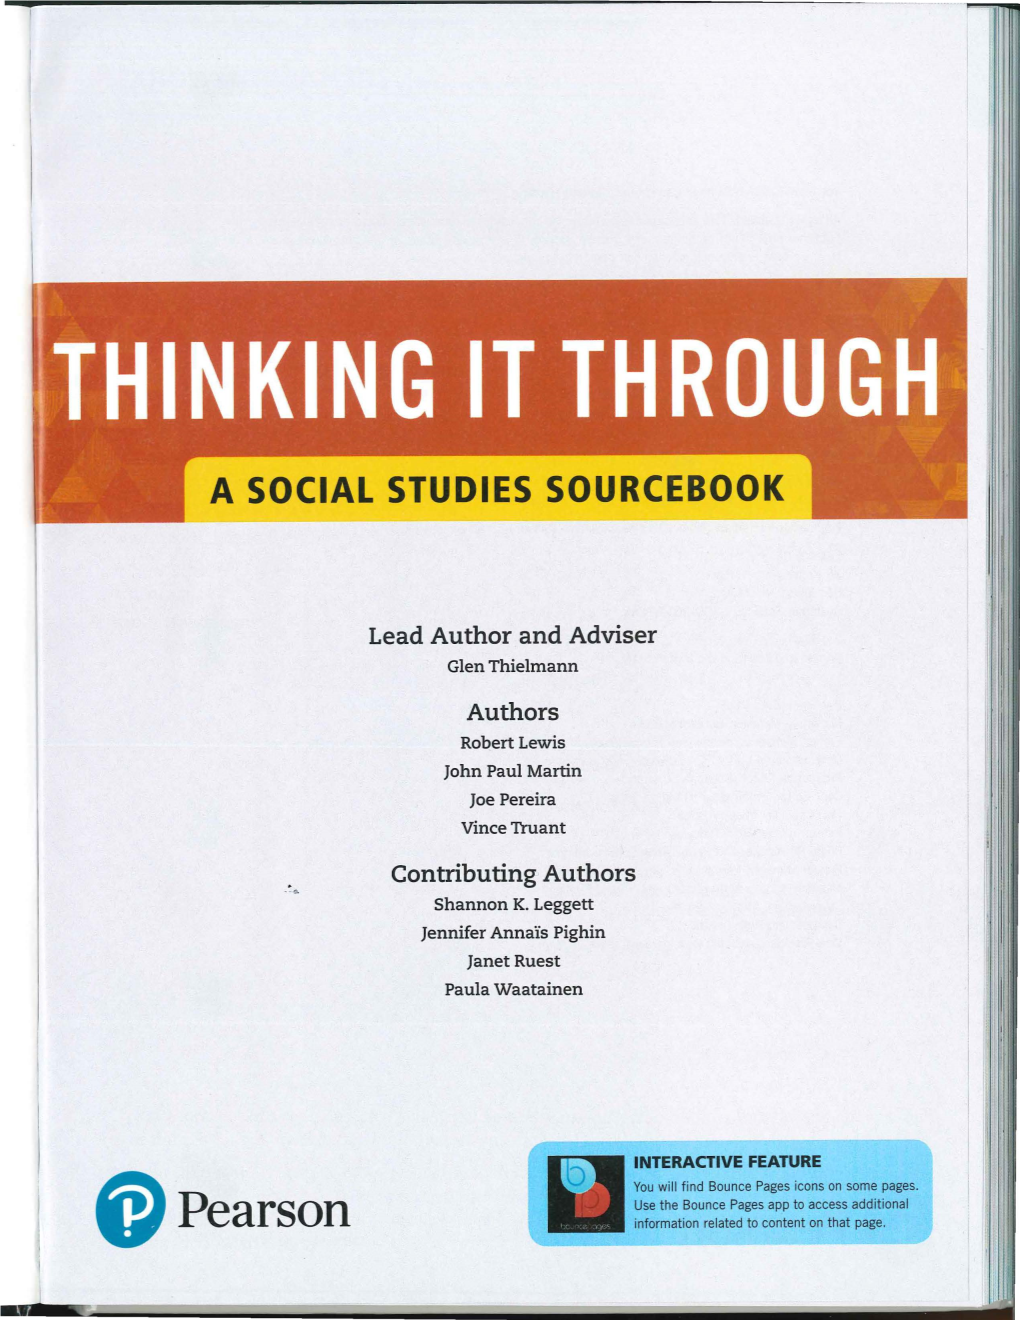 A Social Studies Sourcebook I